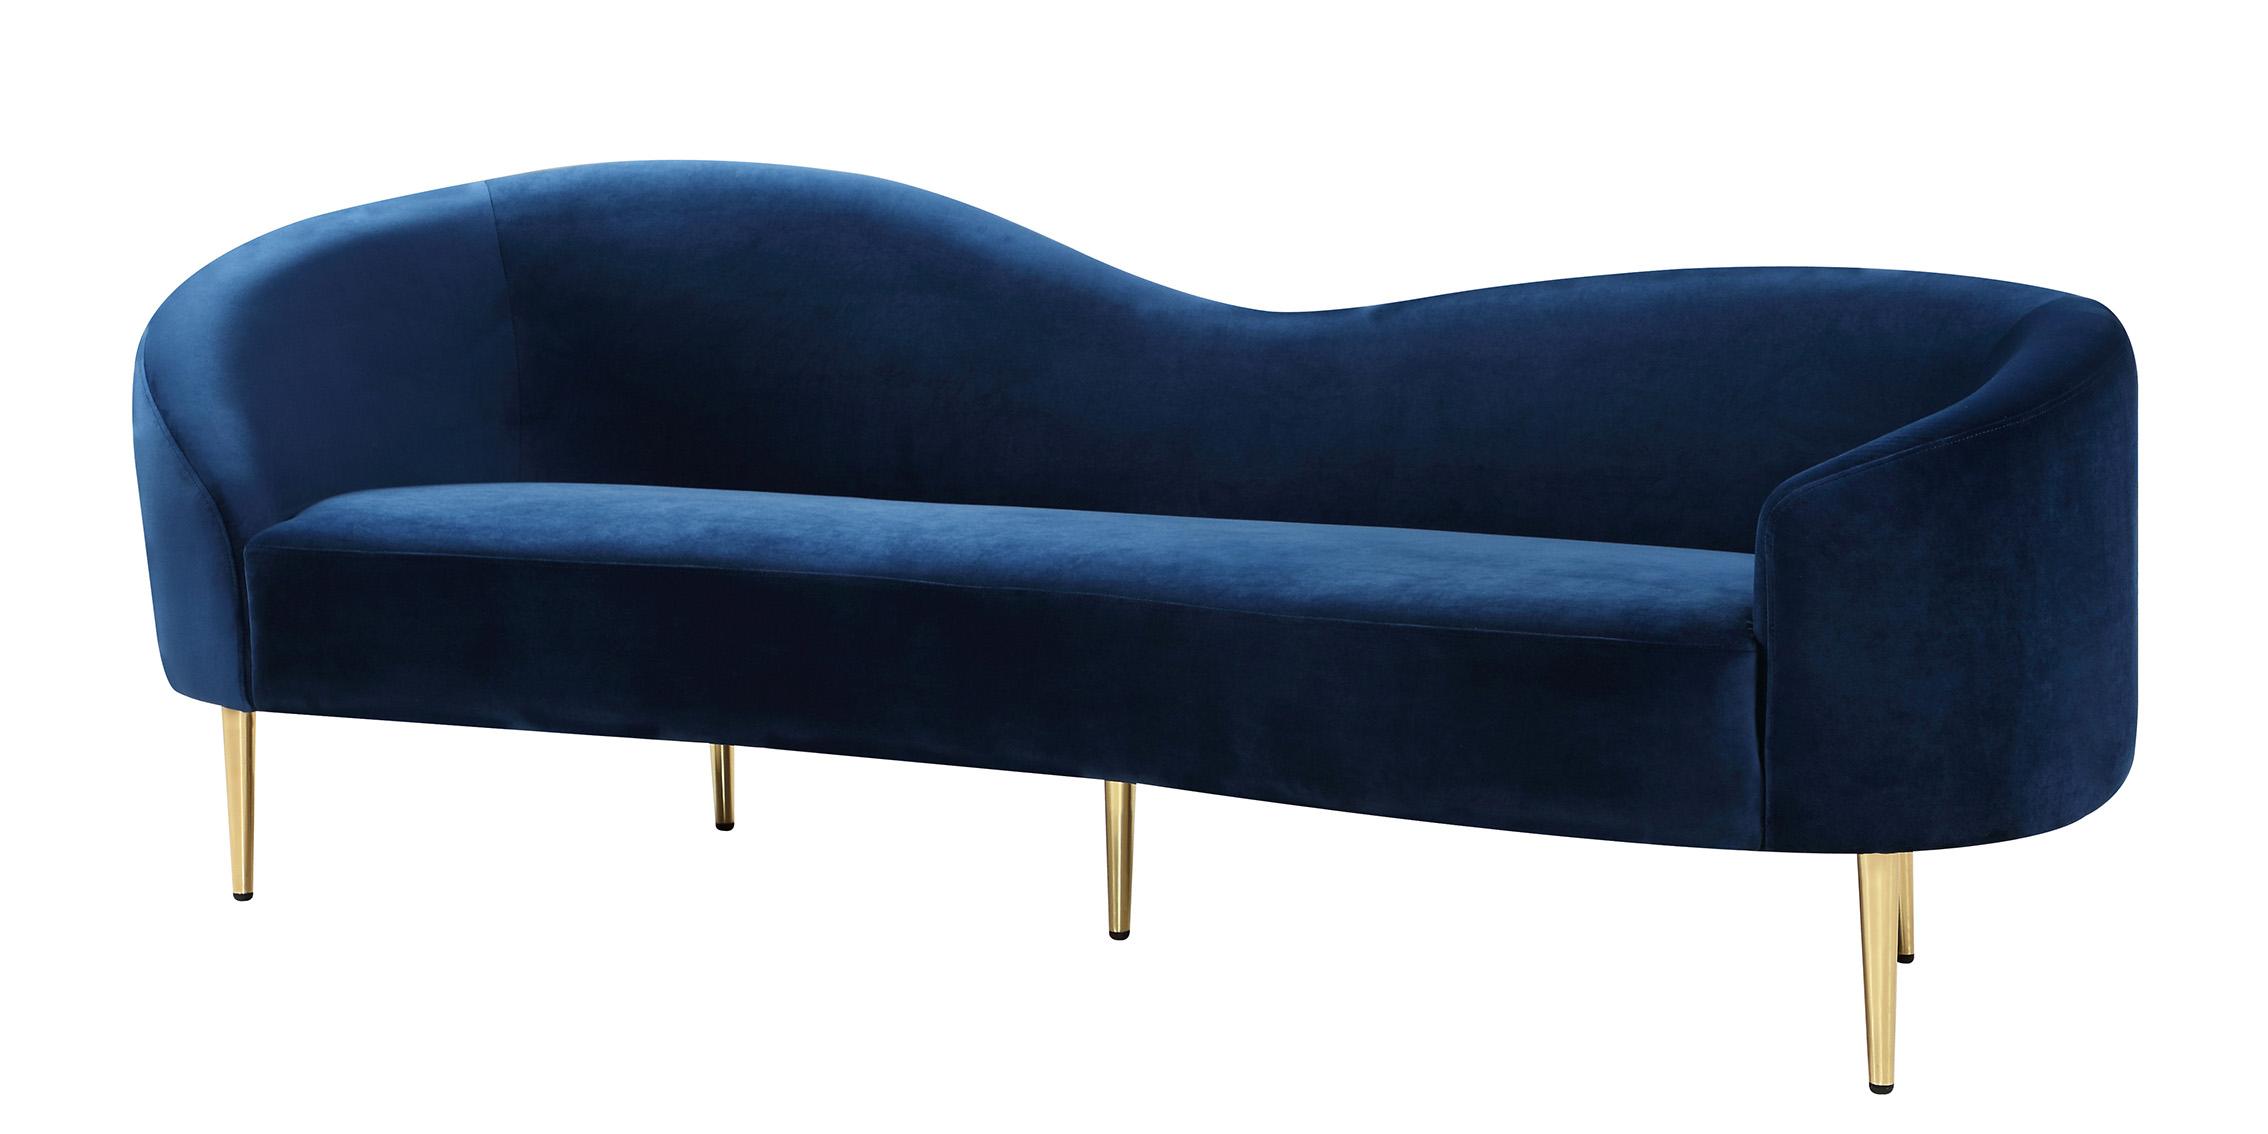 Contemporary, Modern Sofa RITZ 659Navy-S 659Navy-S in Chrome, Navy blue, Gold Velvet